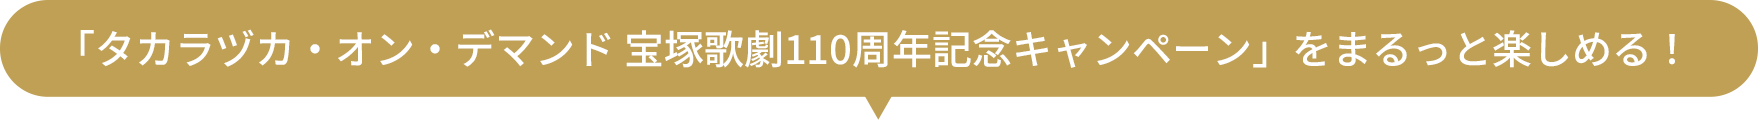 「タカラヅカ・オン・デマンド 宝塚歌劇110周年記念キャンペーン」をまるっと楽しめる！